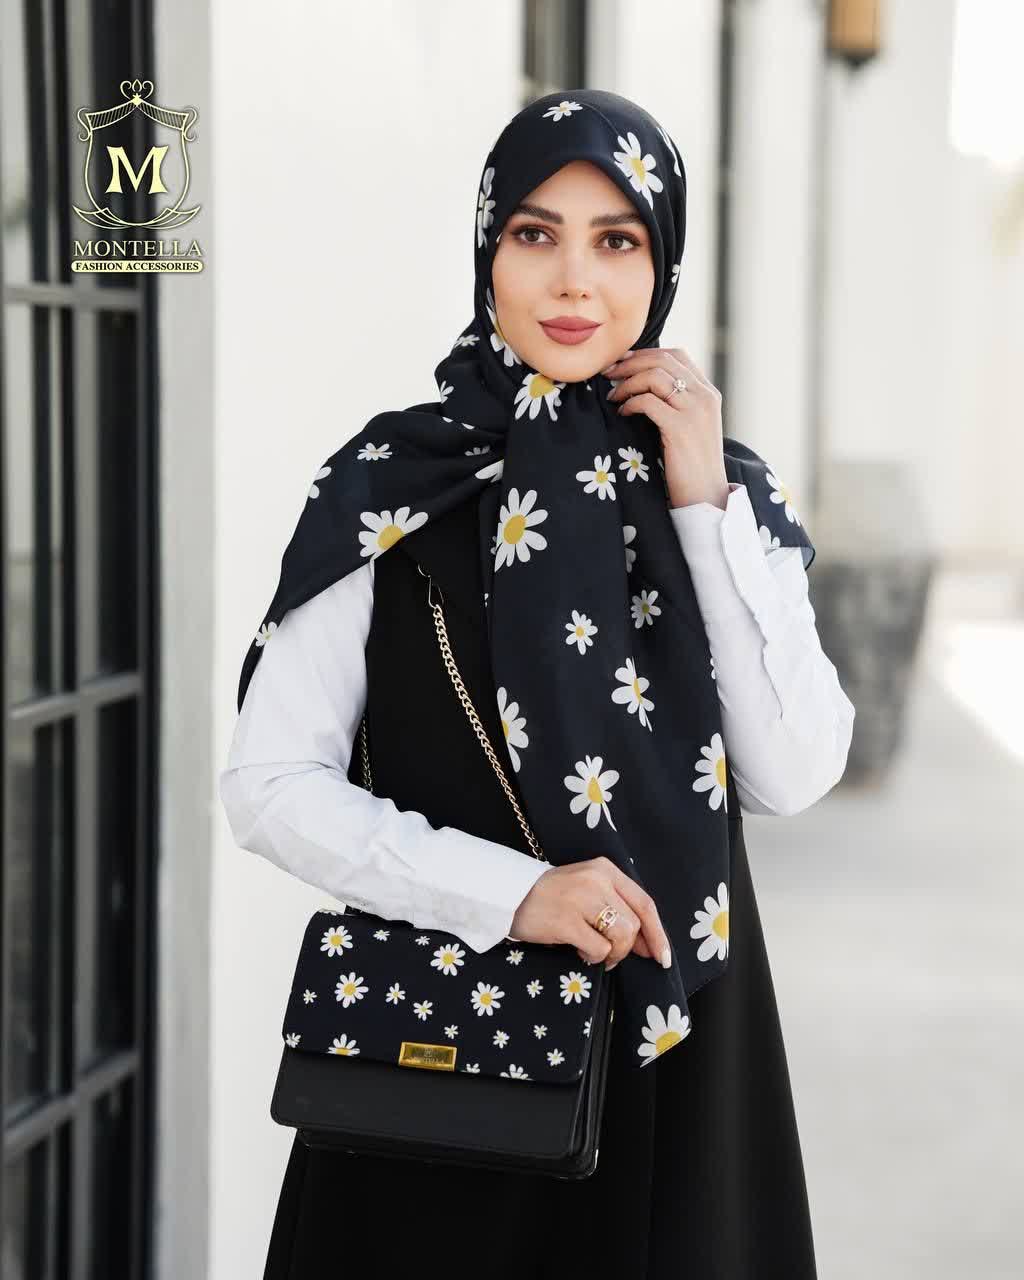 ست کیف و روسری و شال زنانه باکیفیت طرح گل بابونه رنگ مشکی با کیف پاسپورتی دسته زنجیری با ارسال رایگان کد mo485